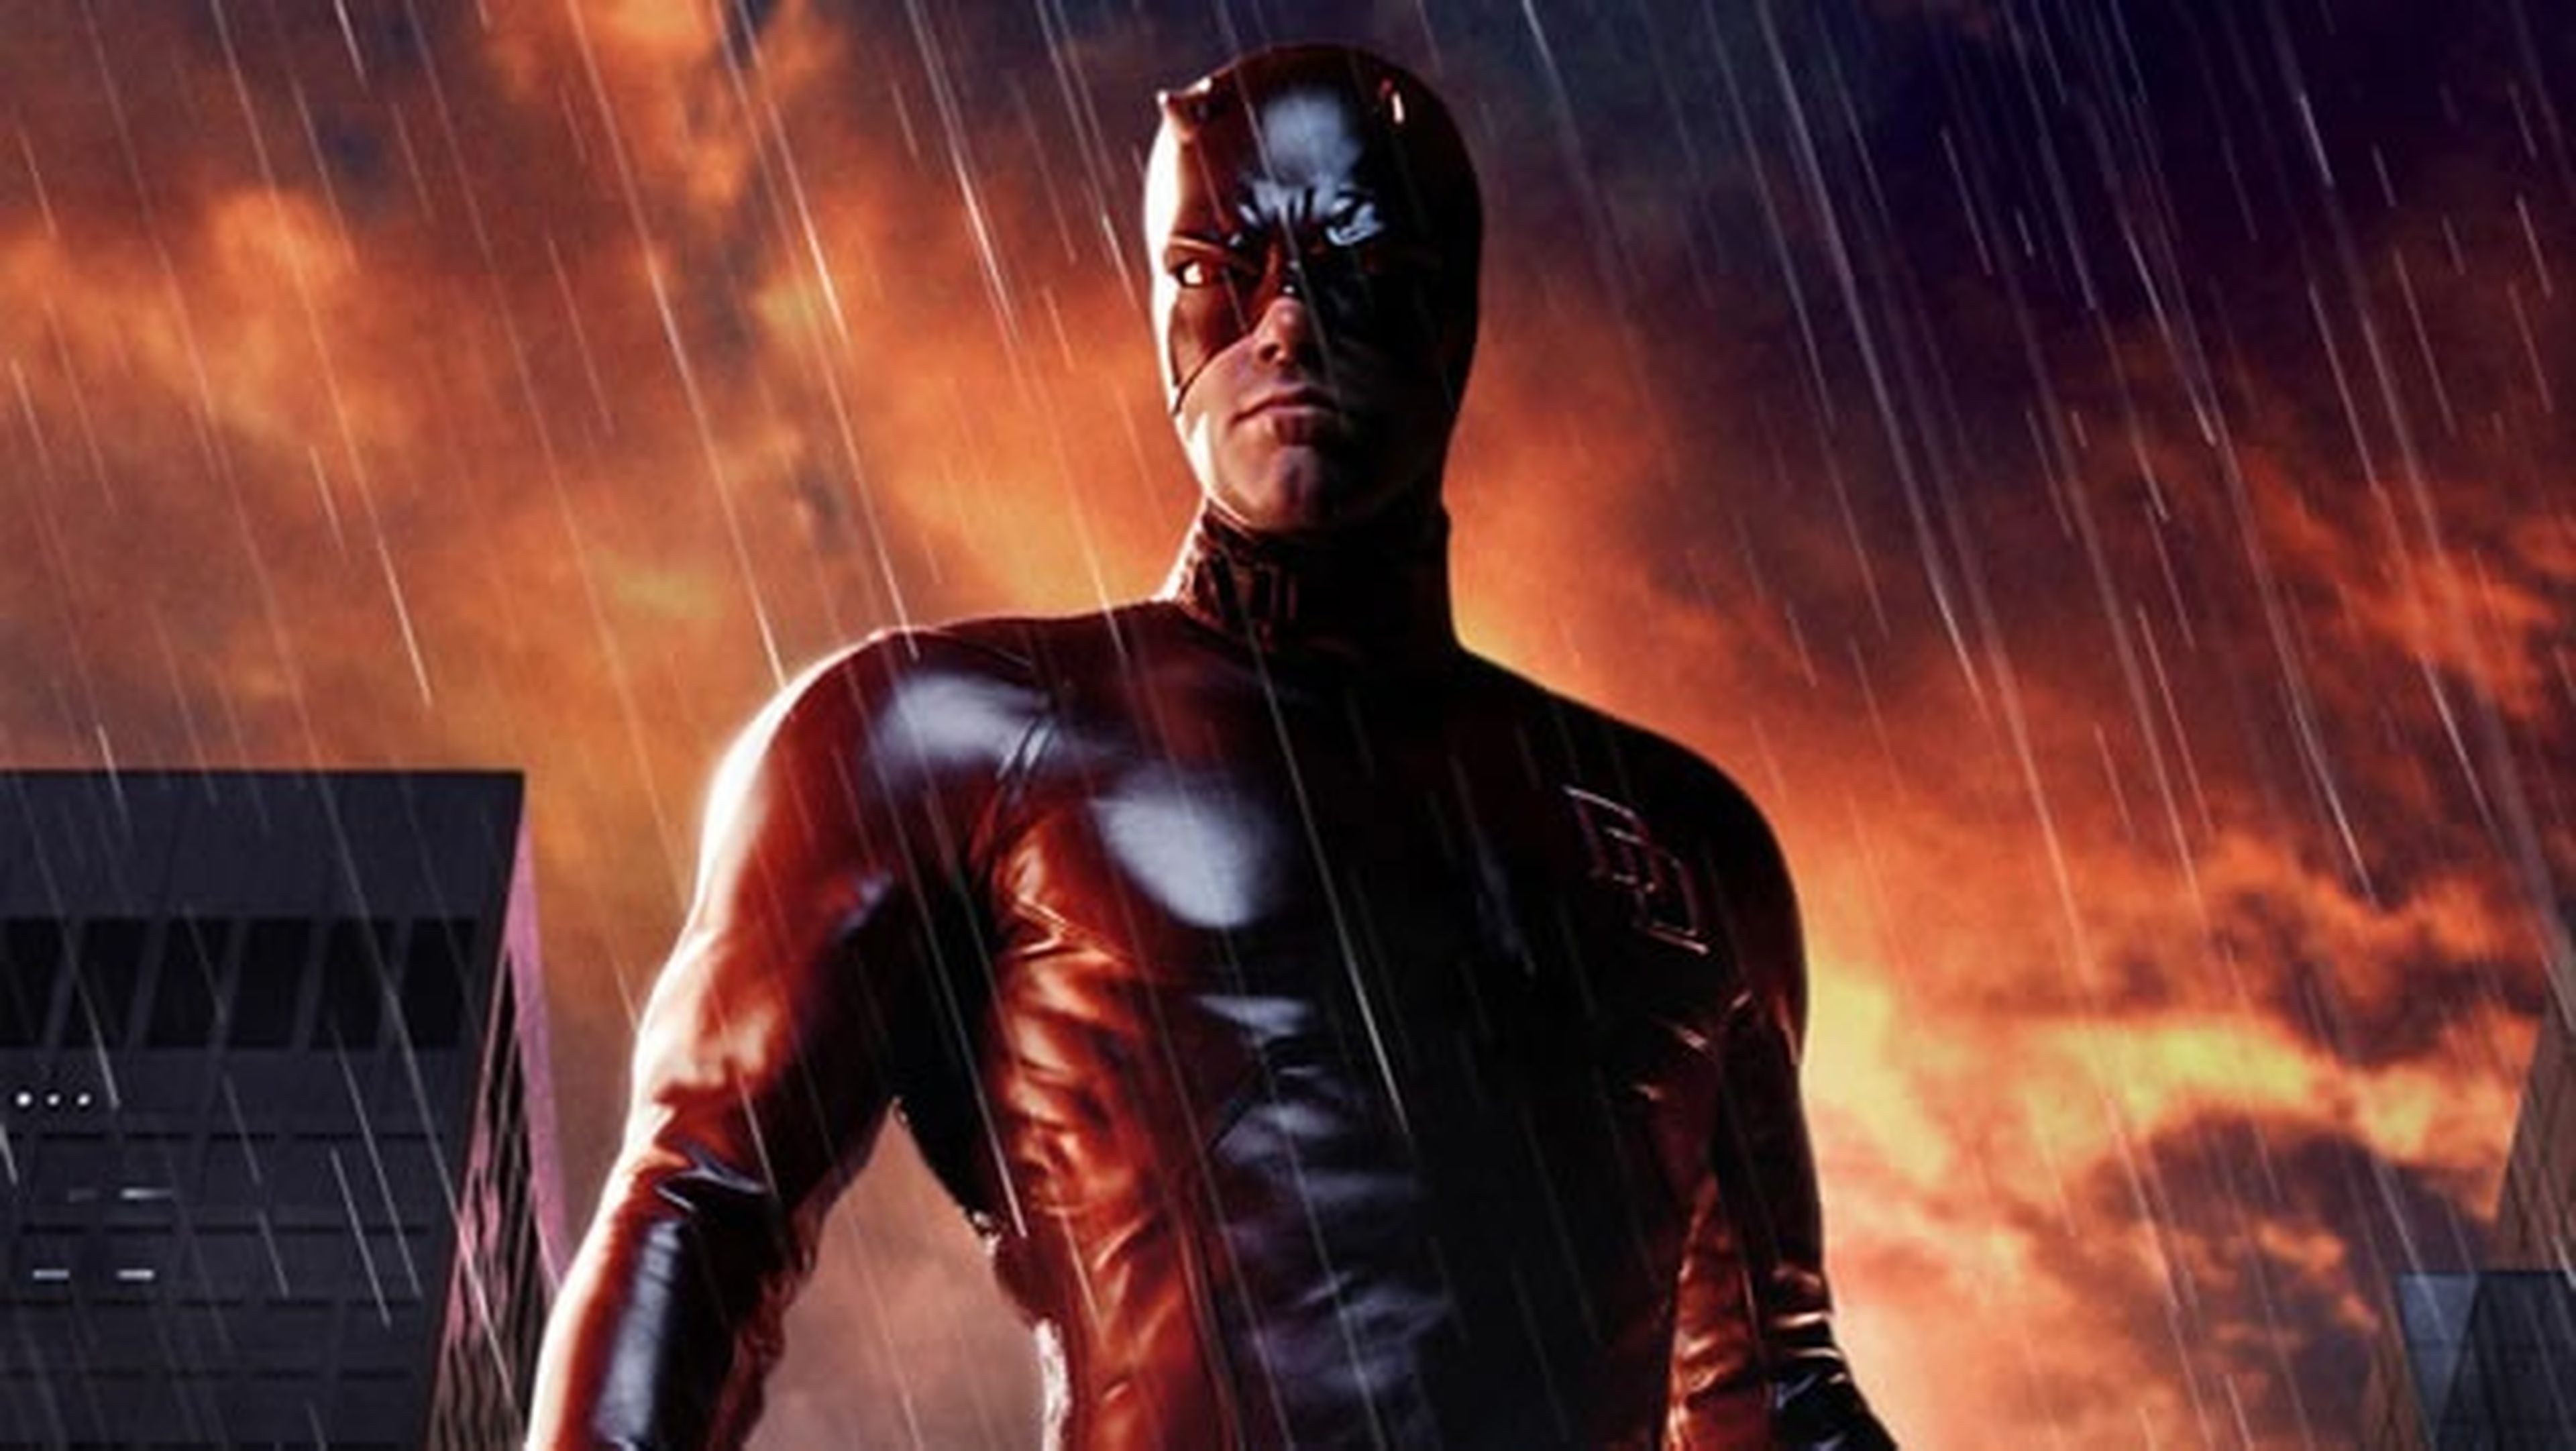 Cine de superhéroes: Crítica de Daredevil